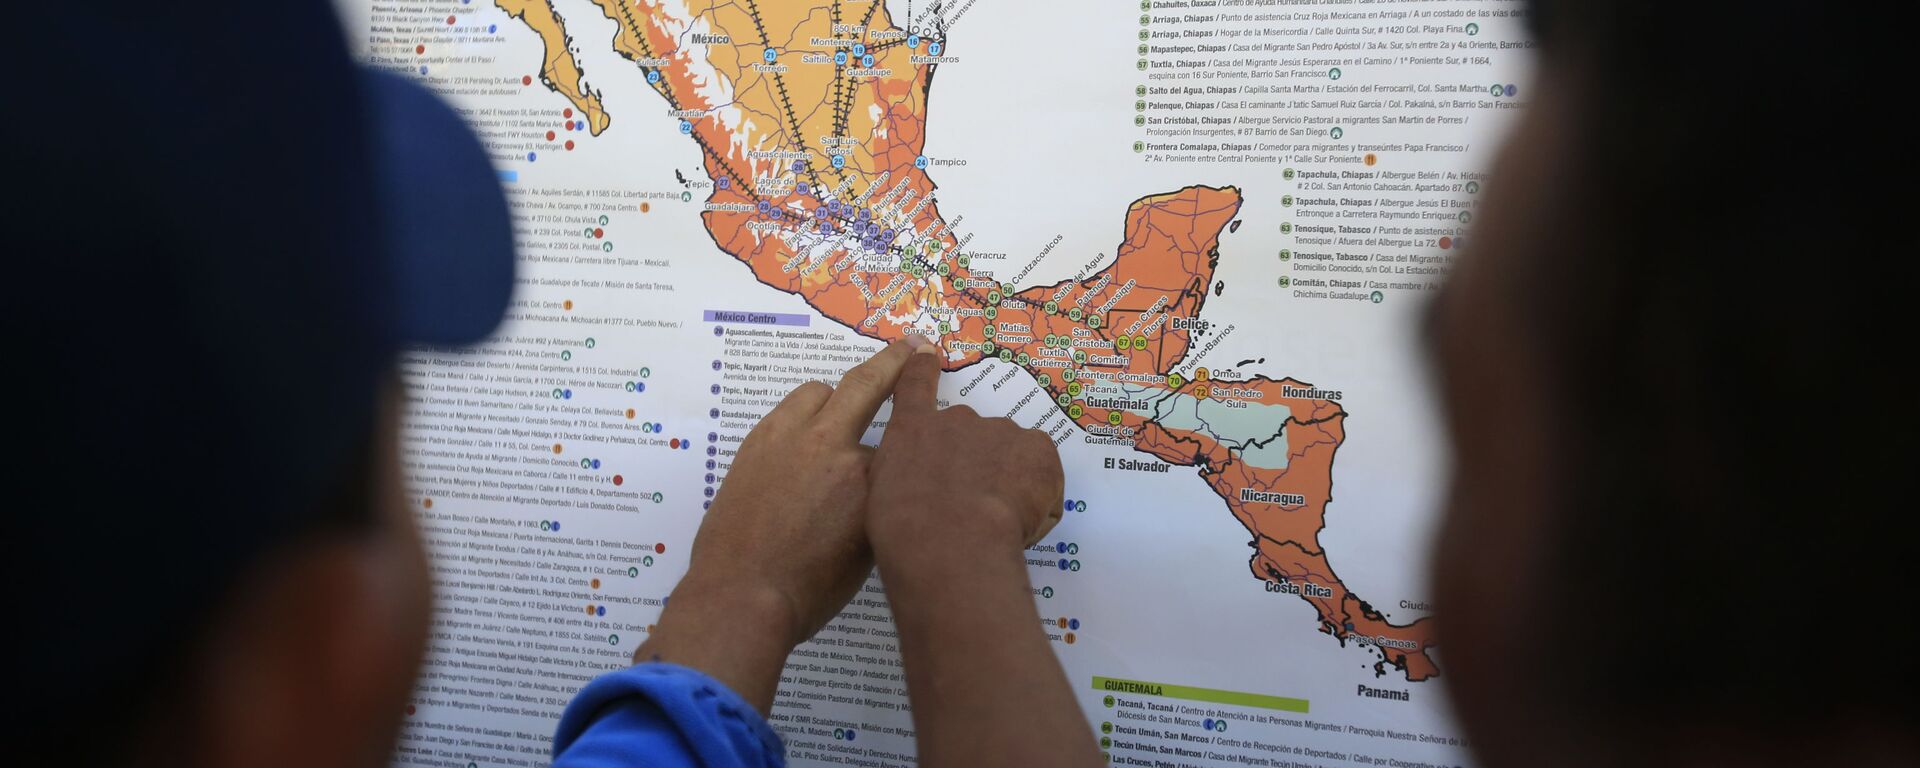 Migrantes centroamericanos planean su recorrido con un mapa en Ciudad de México - Sputnik Mundo, 1920, 23.12.2020